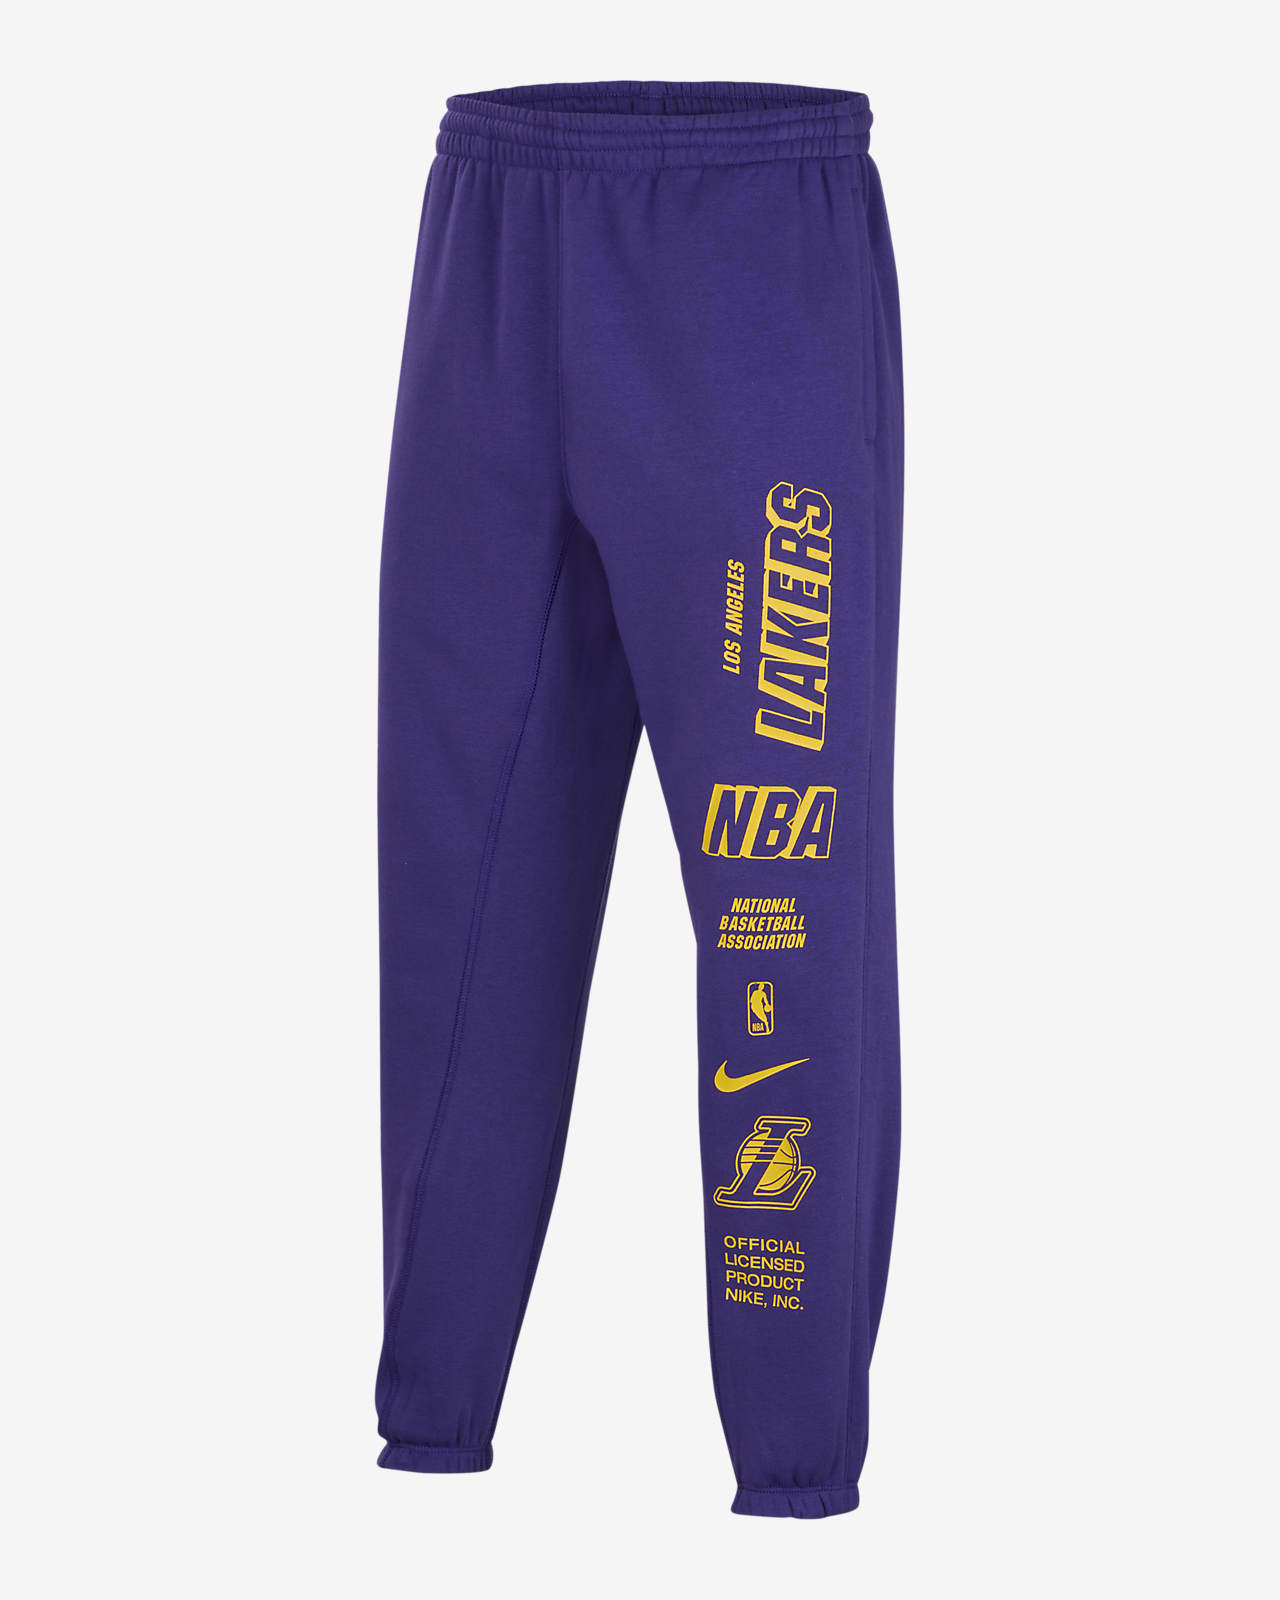 Los Angeles Lakers Courtside Pantalons de teixit Fleece Nike NBA - Nen/a